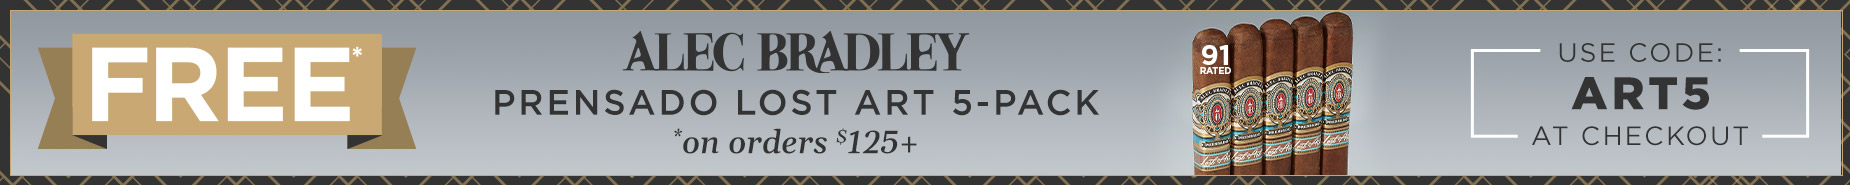 Code ART5 = Alec Bradley 5-pack&nbsp; on Orders $125+